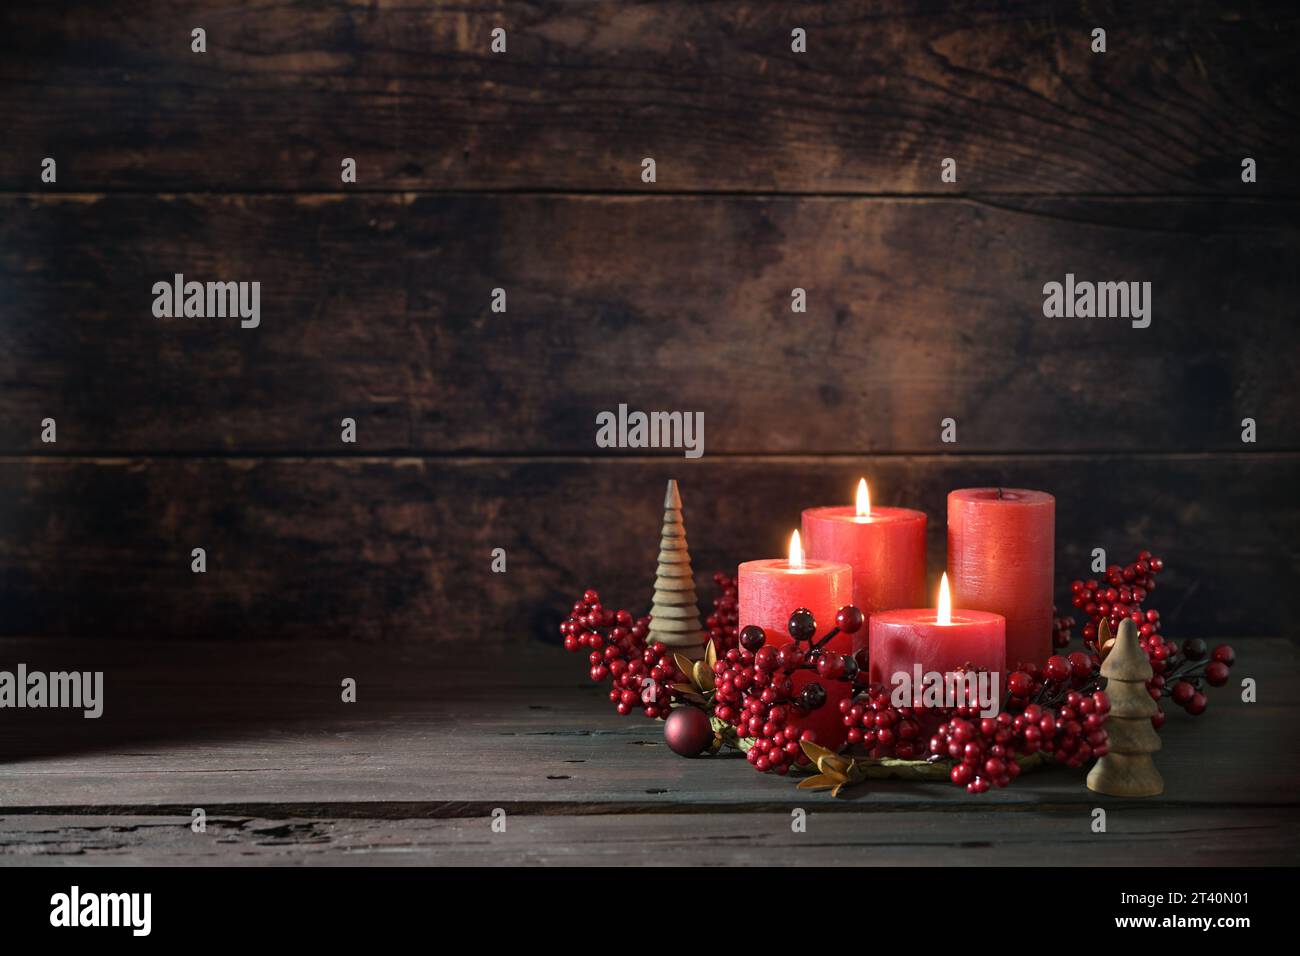 Terza corona dell'avvento con candele rosse, tre sono accese, decorazione con frutti di bosco, palle di Natale e piccoli alberi di legno, sfondo rustico scuro, copia spa Foto Stock